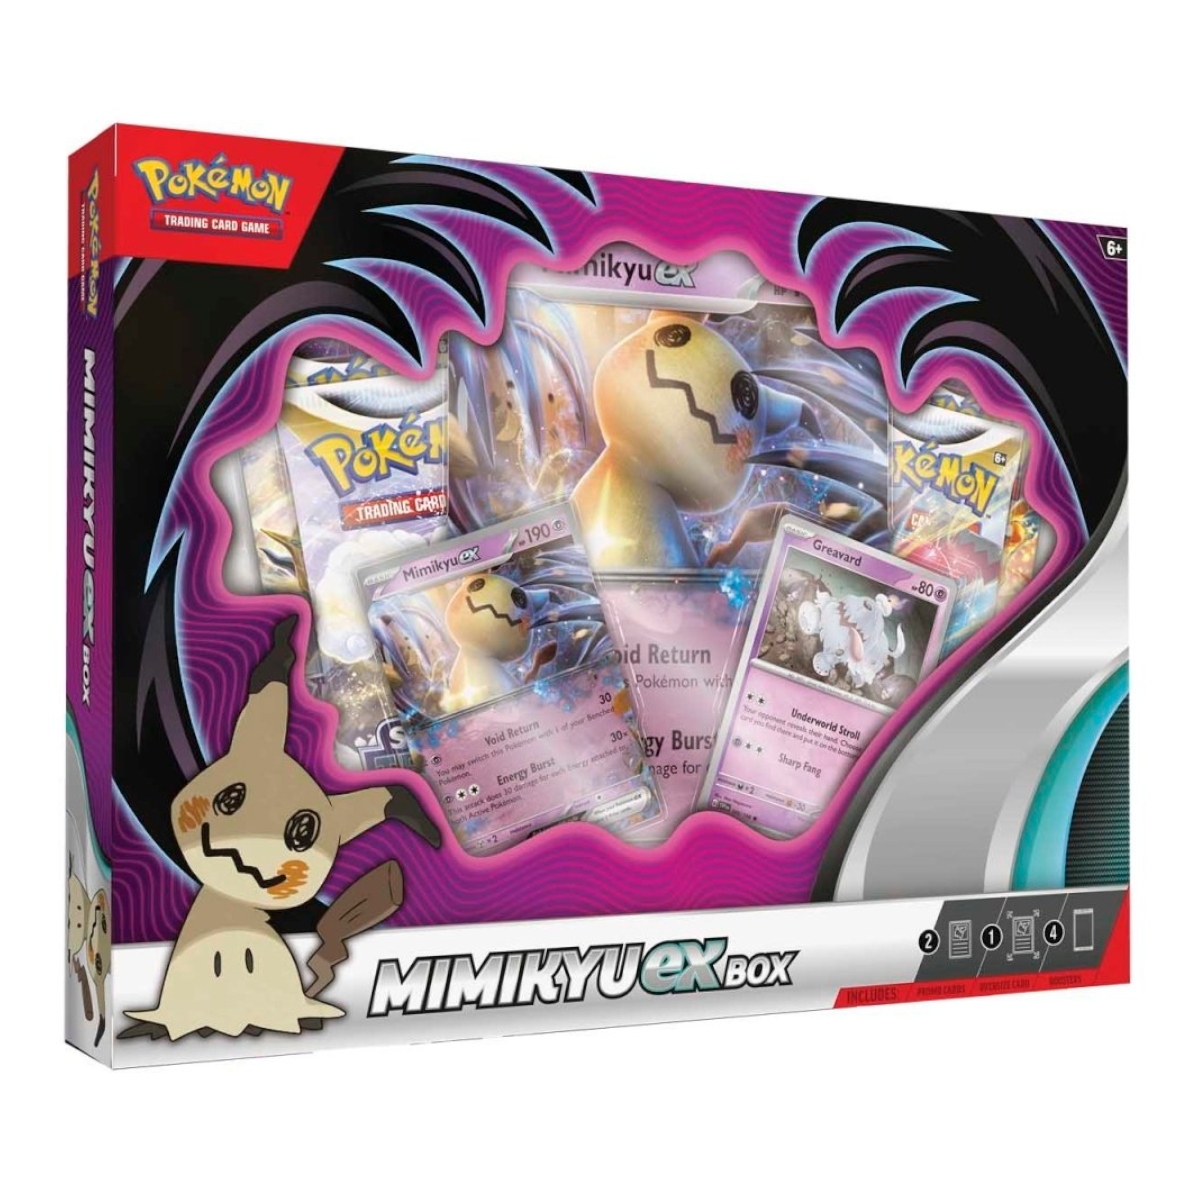 Pokémon - Mimikyu ex Box 